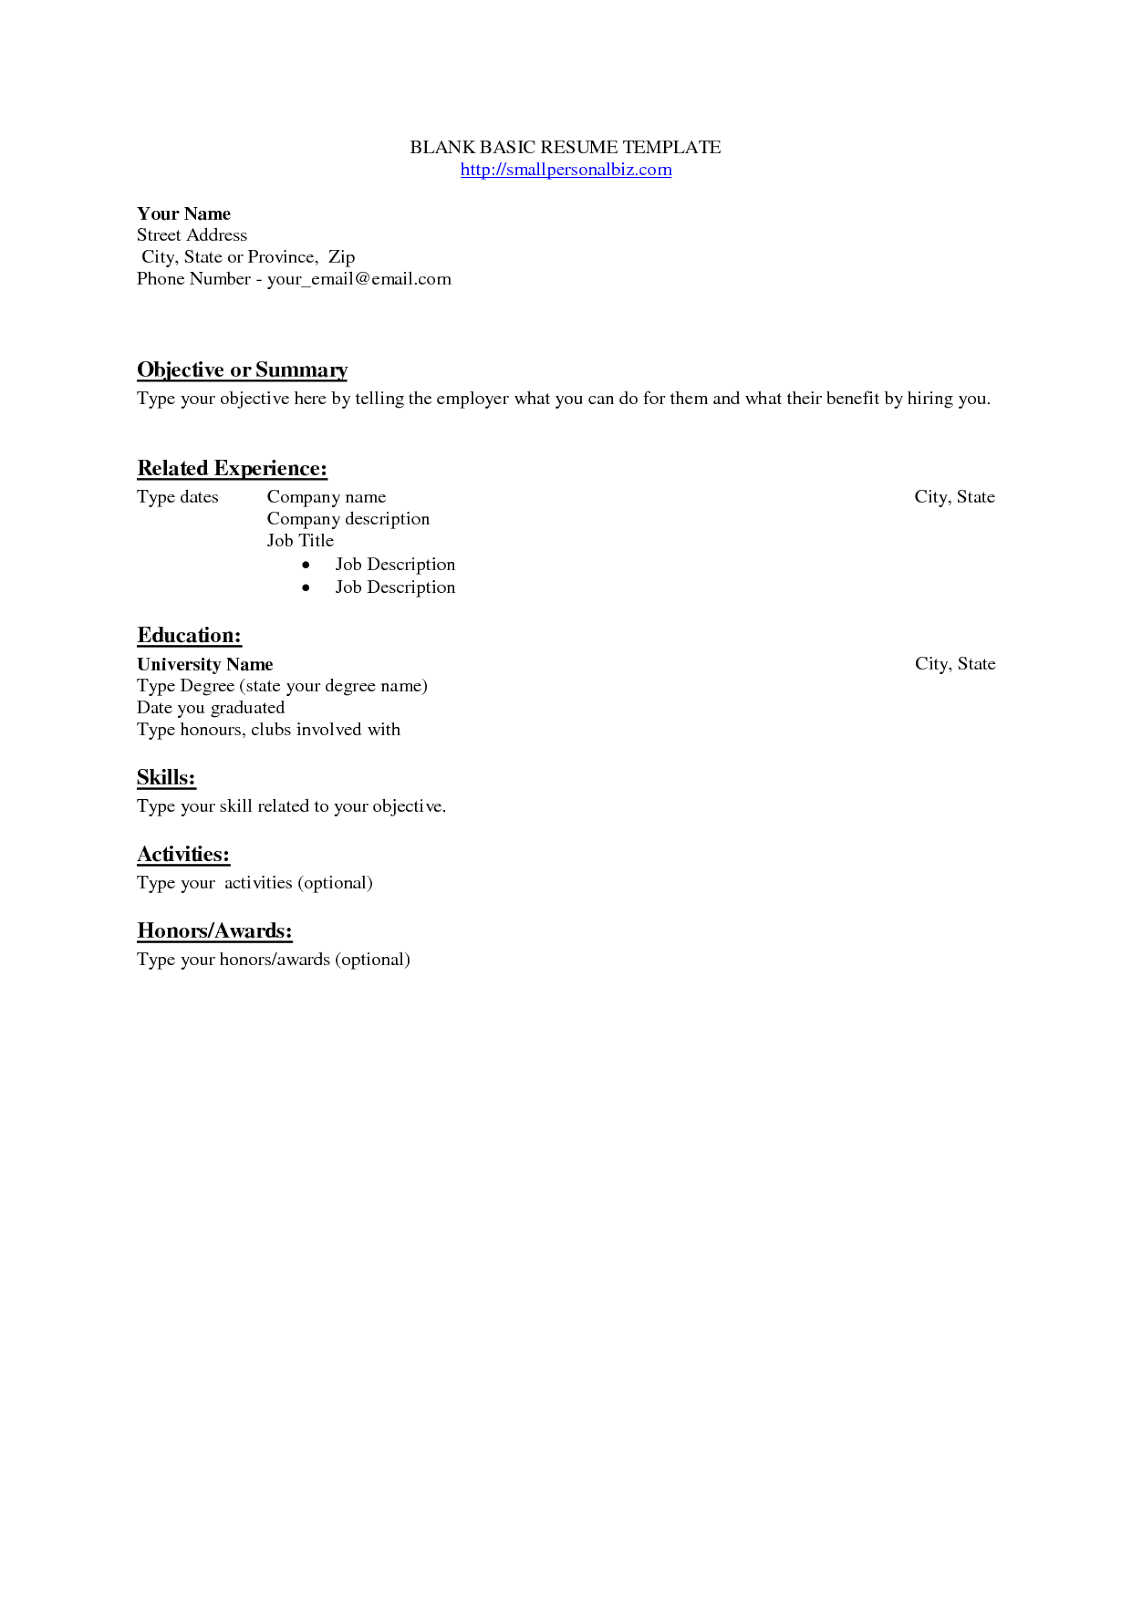 Resume vb net